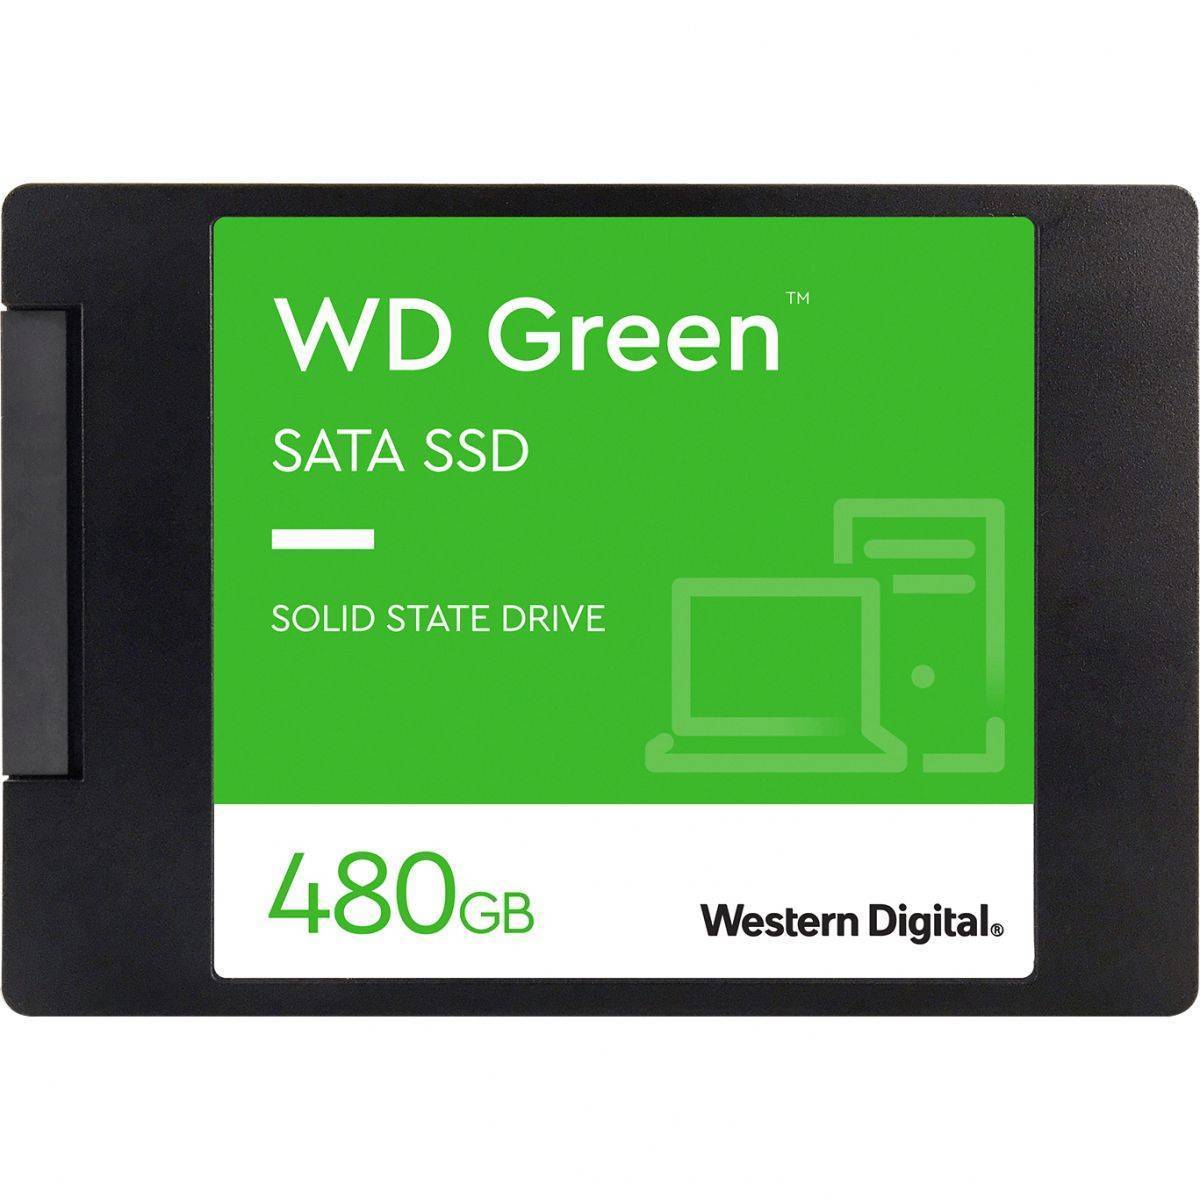 WD SSD Green, 480GB, 2.5" 7mm, SATA3, 3D TLC, R/W 545/н.д., IOPs н.д./н.д., TBW н.д., DWPD н.д. (12 мес.)